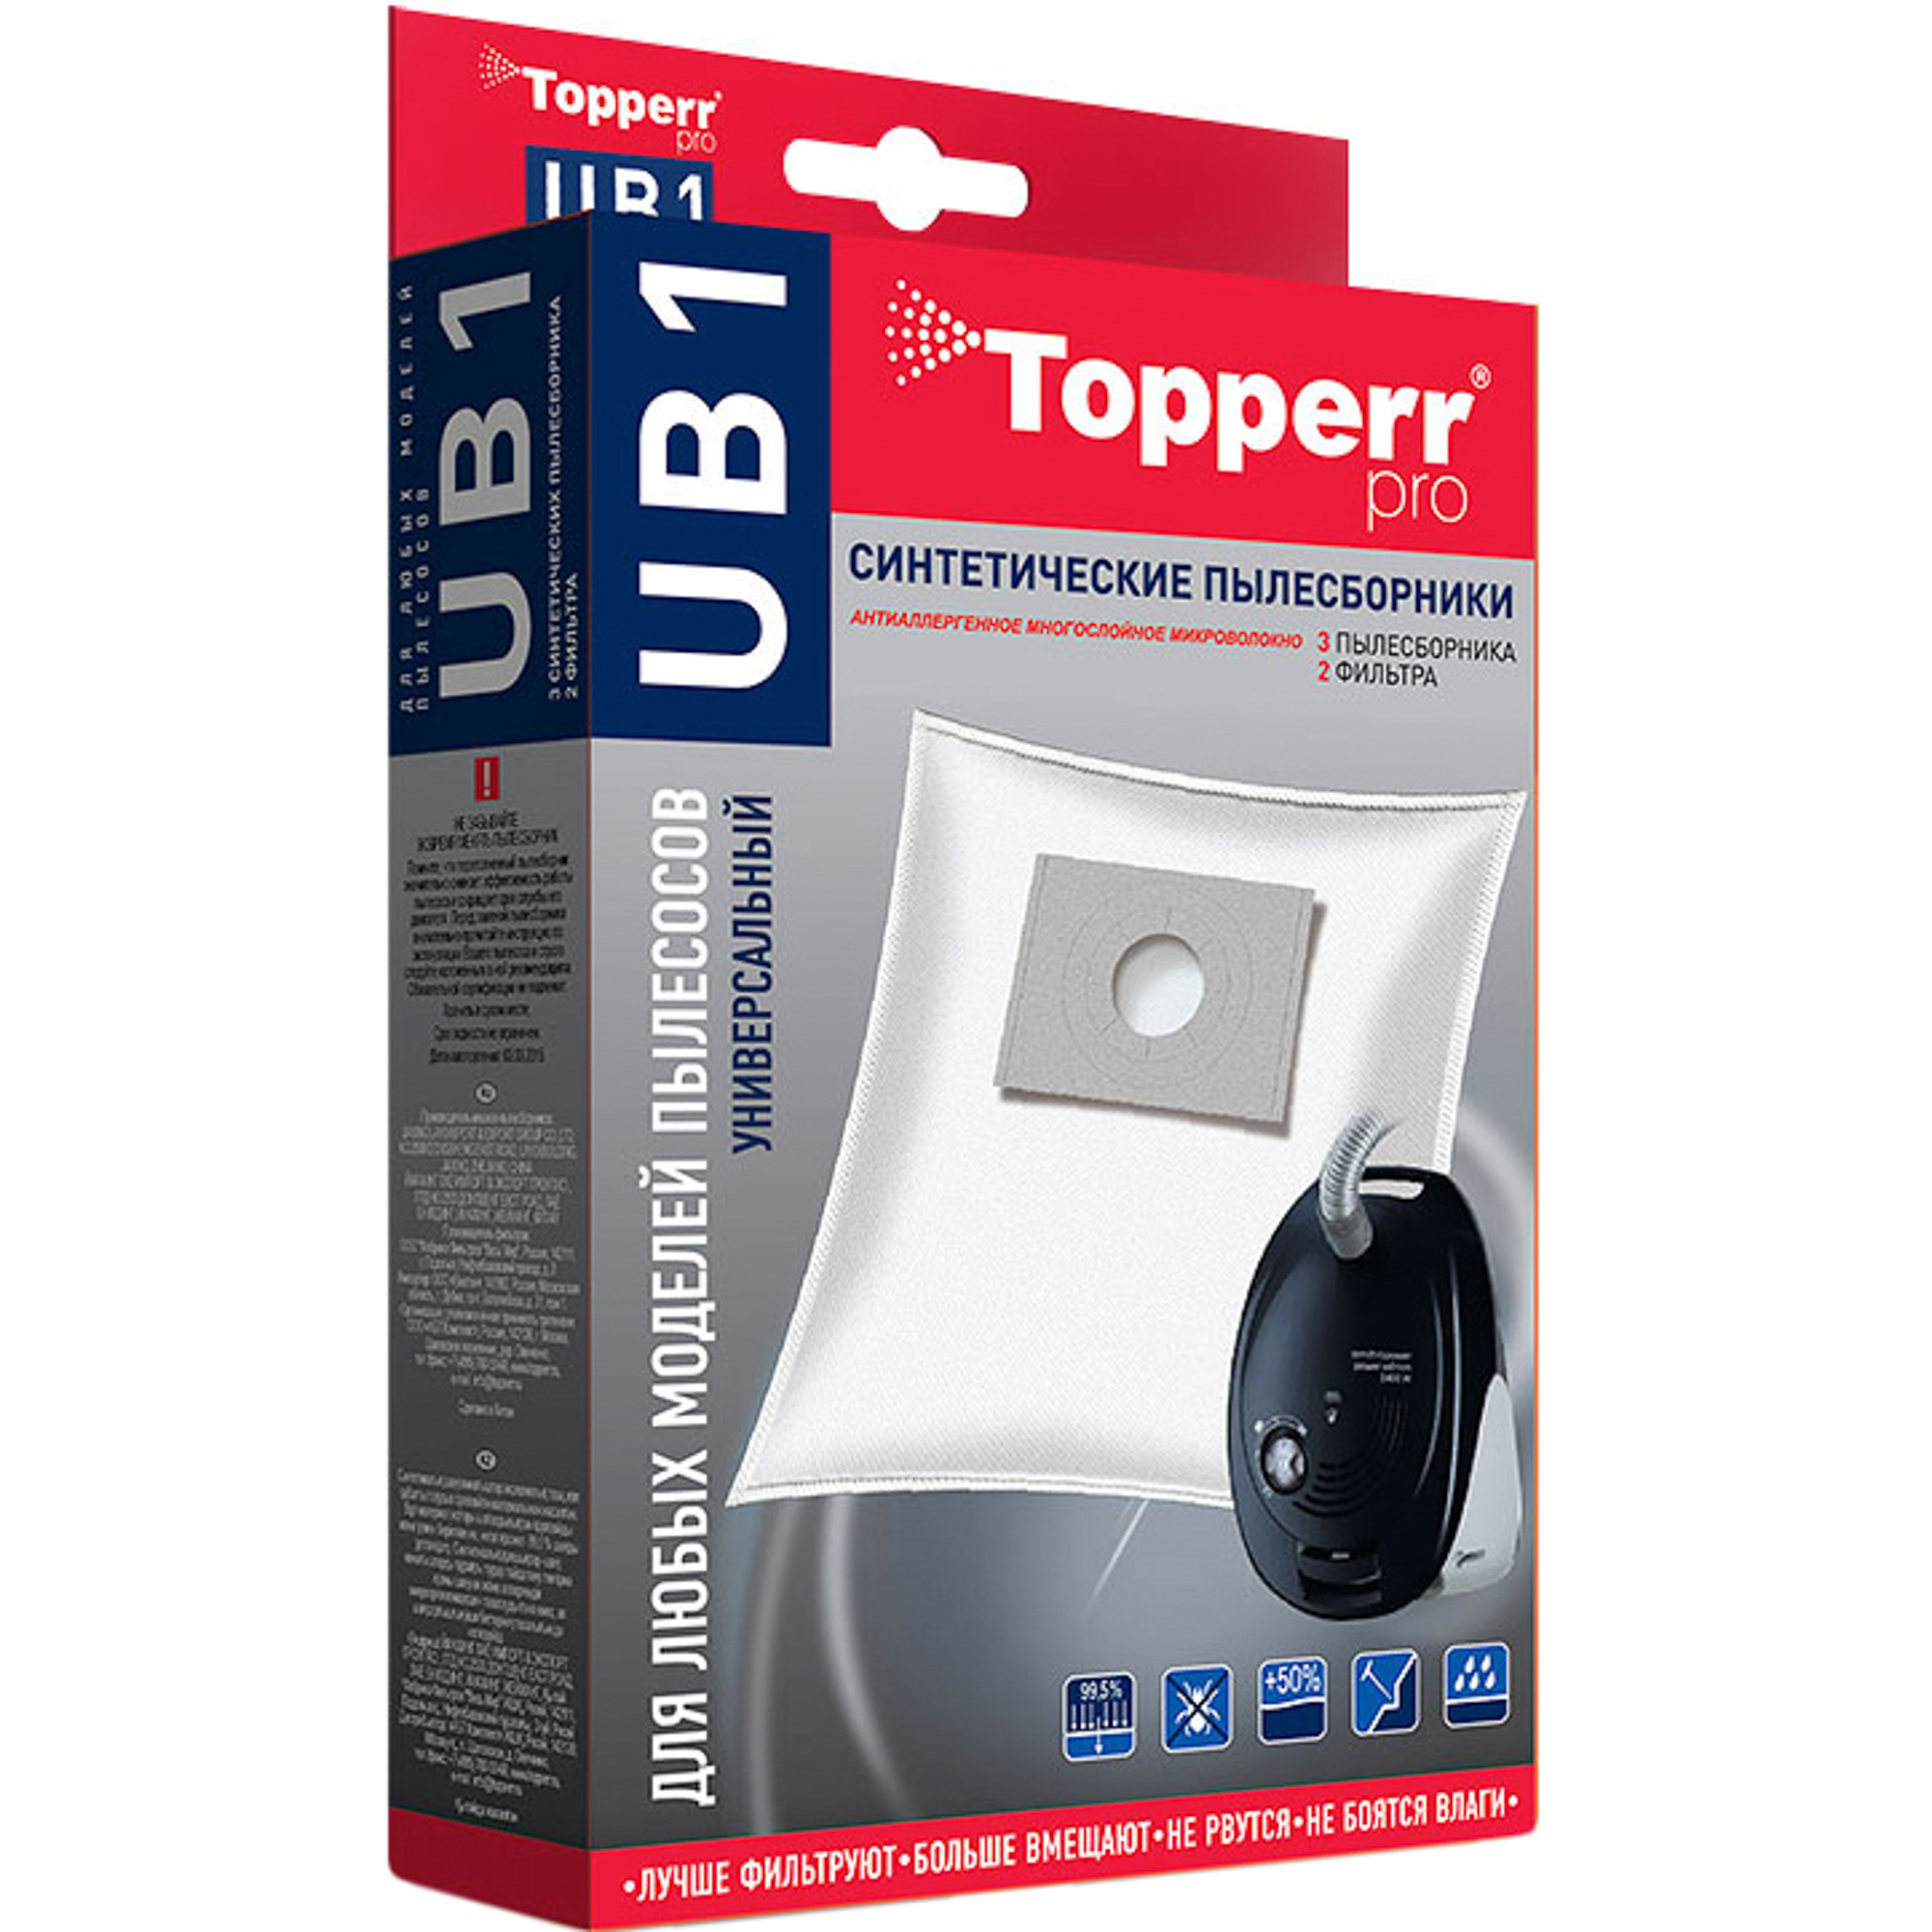 Пылесборник Topperr UB1 цена и фото